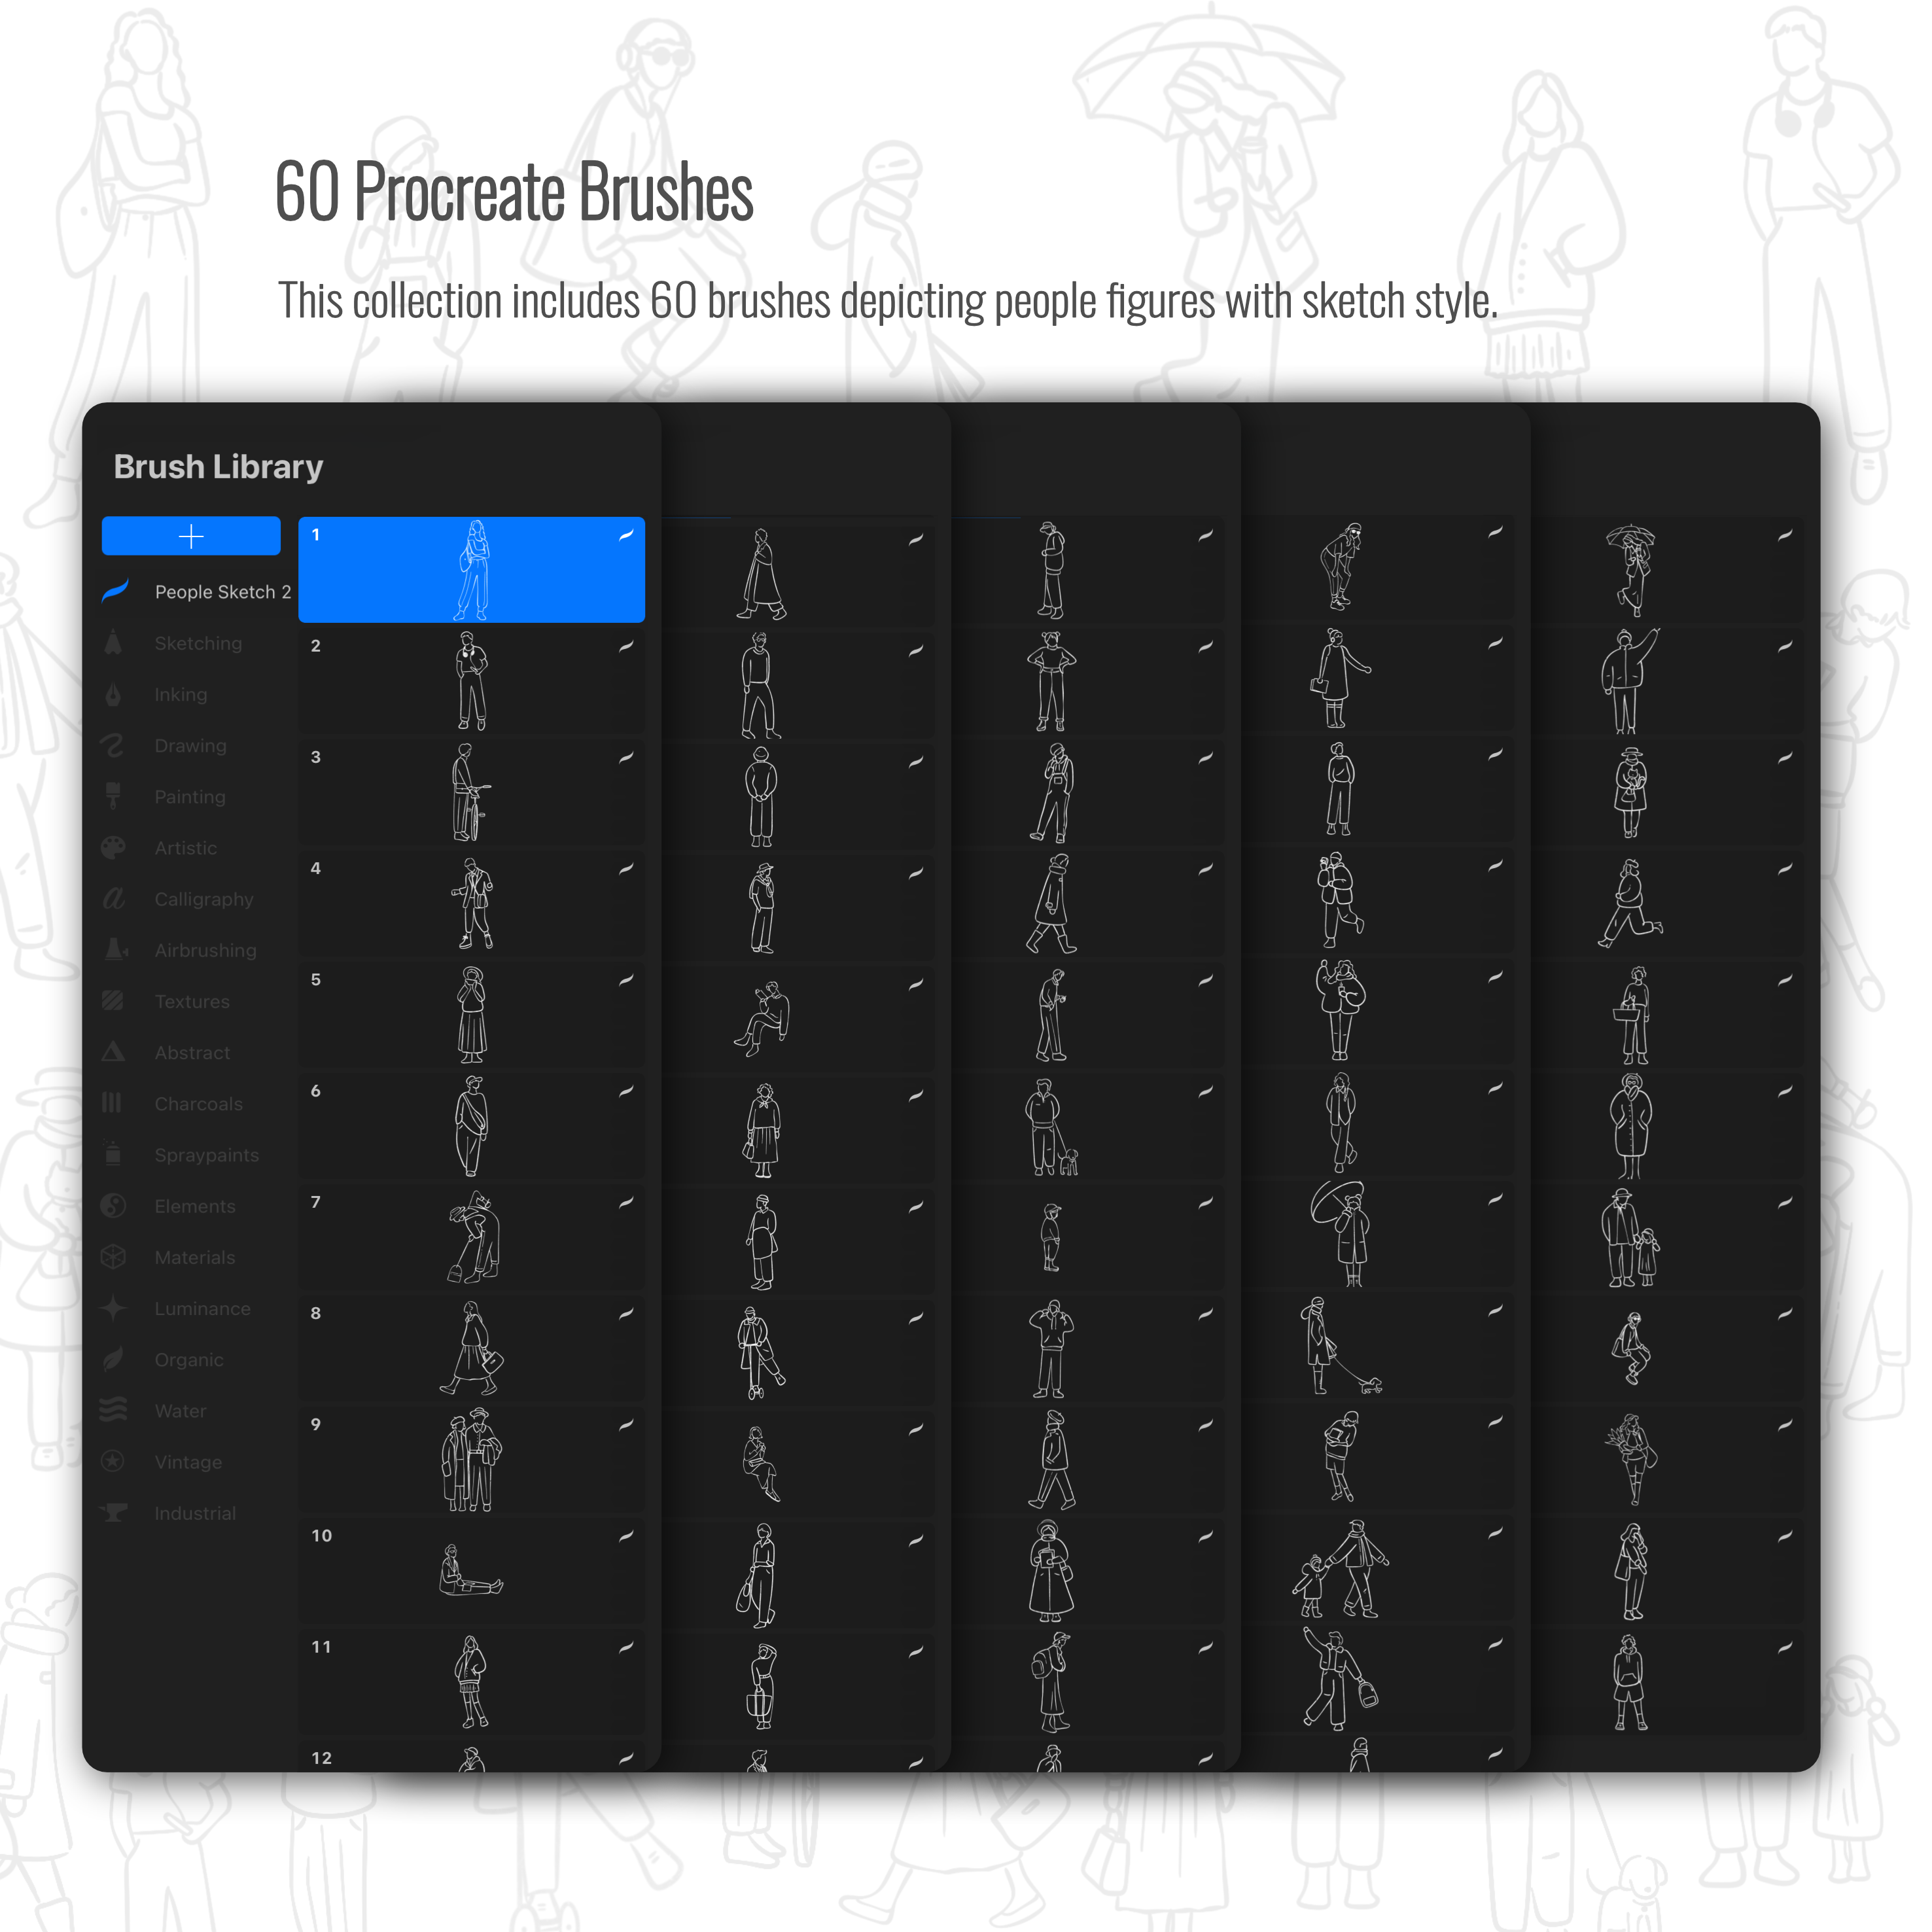 Procreate People Sketch Brushset 2 PNG - Toffu Co